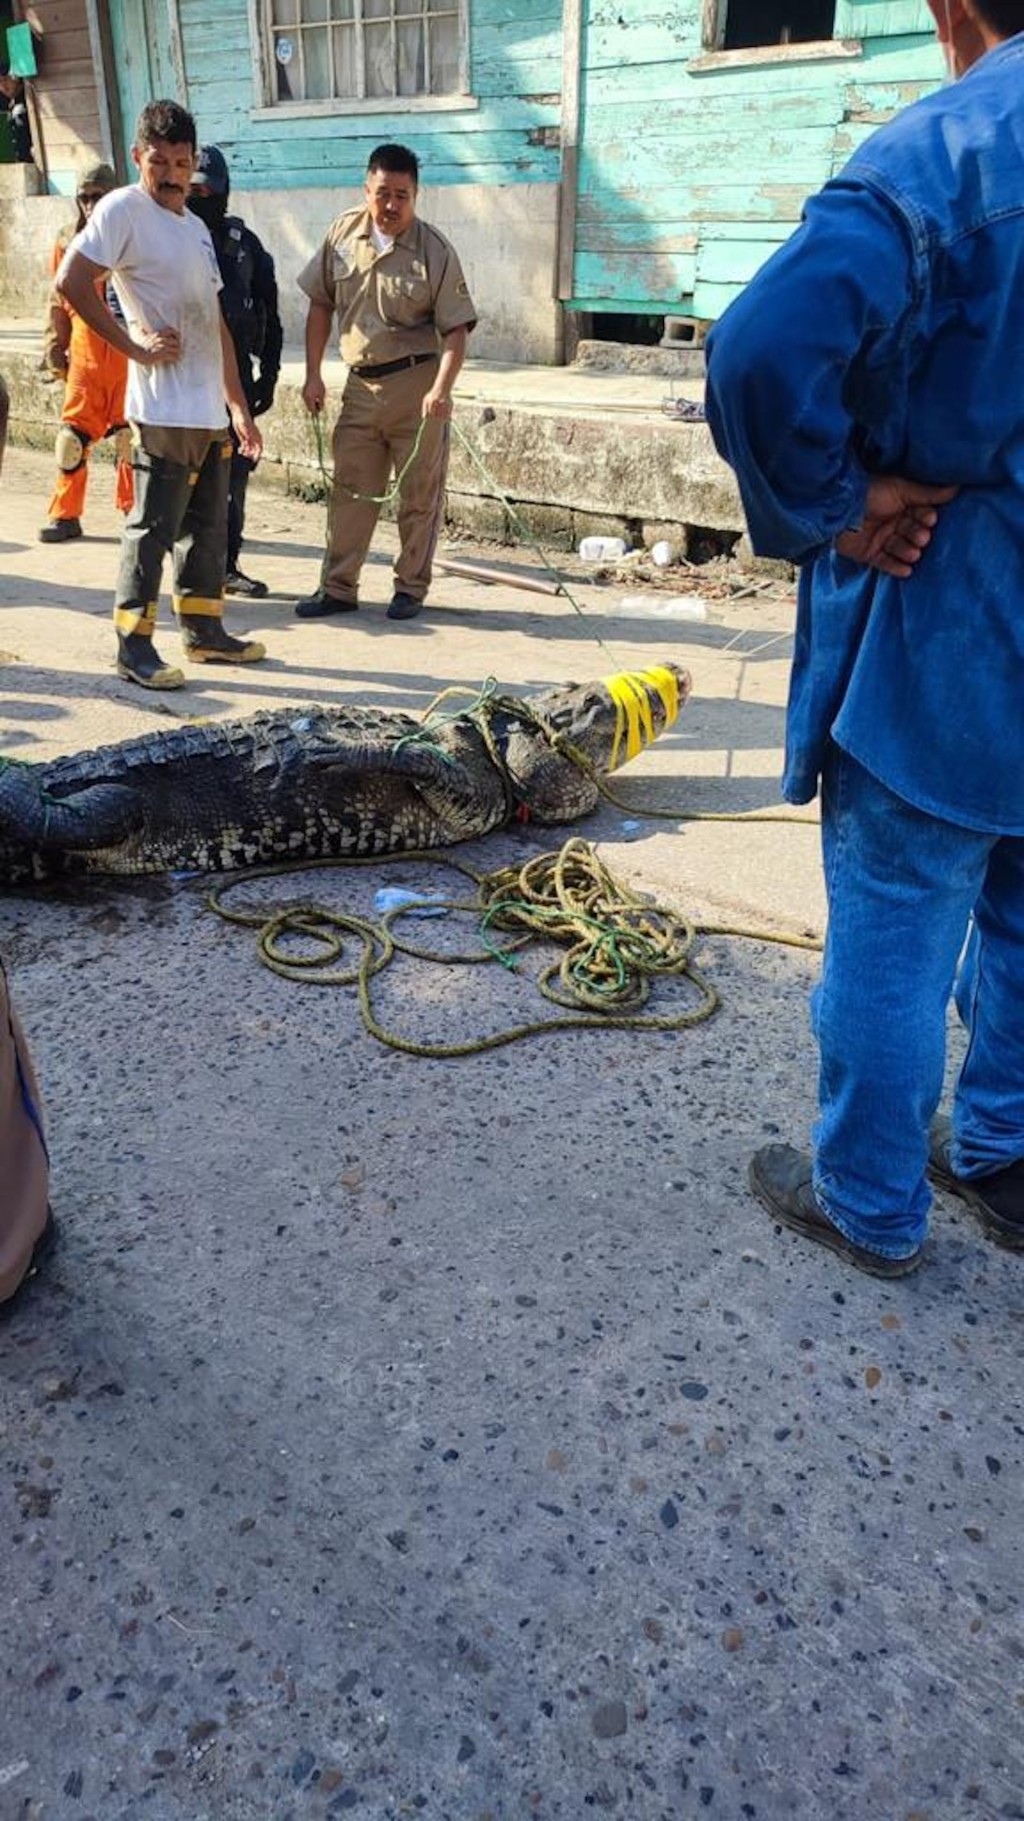 警方及消防员到场花近一小时在寻找鳄鱼并将裸尸捞起。（twitter影片截图）